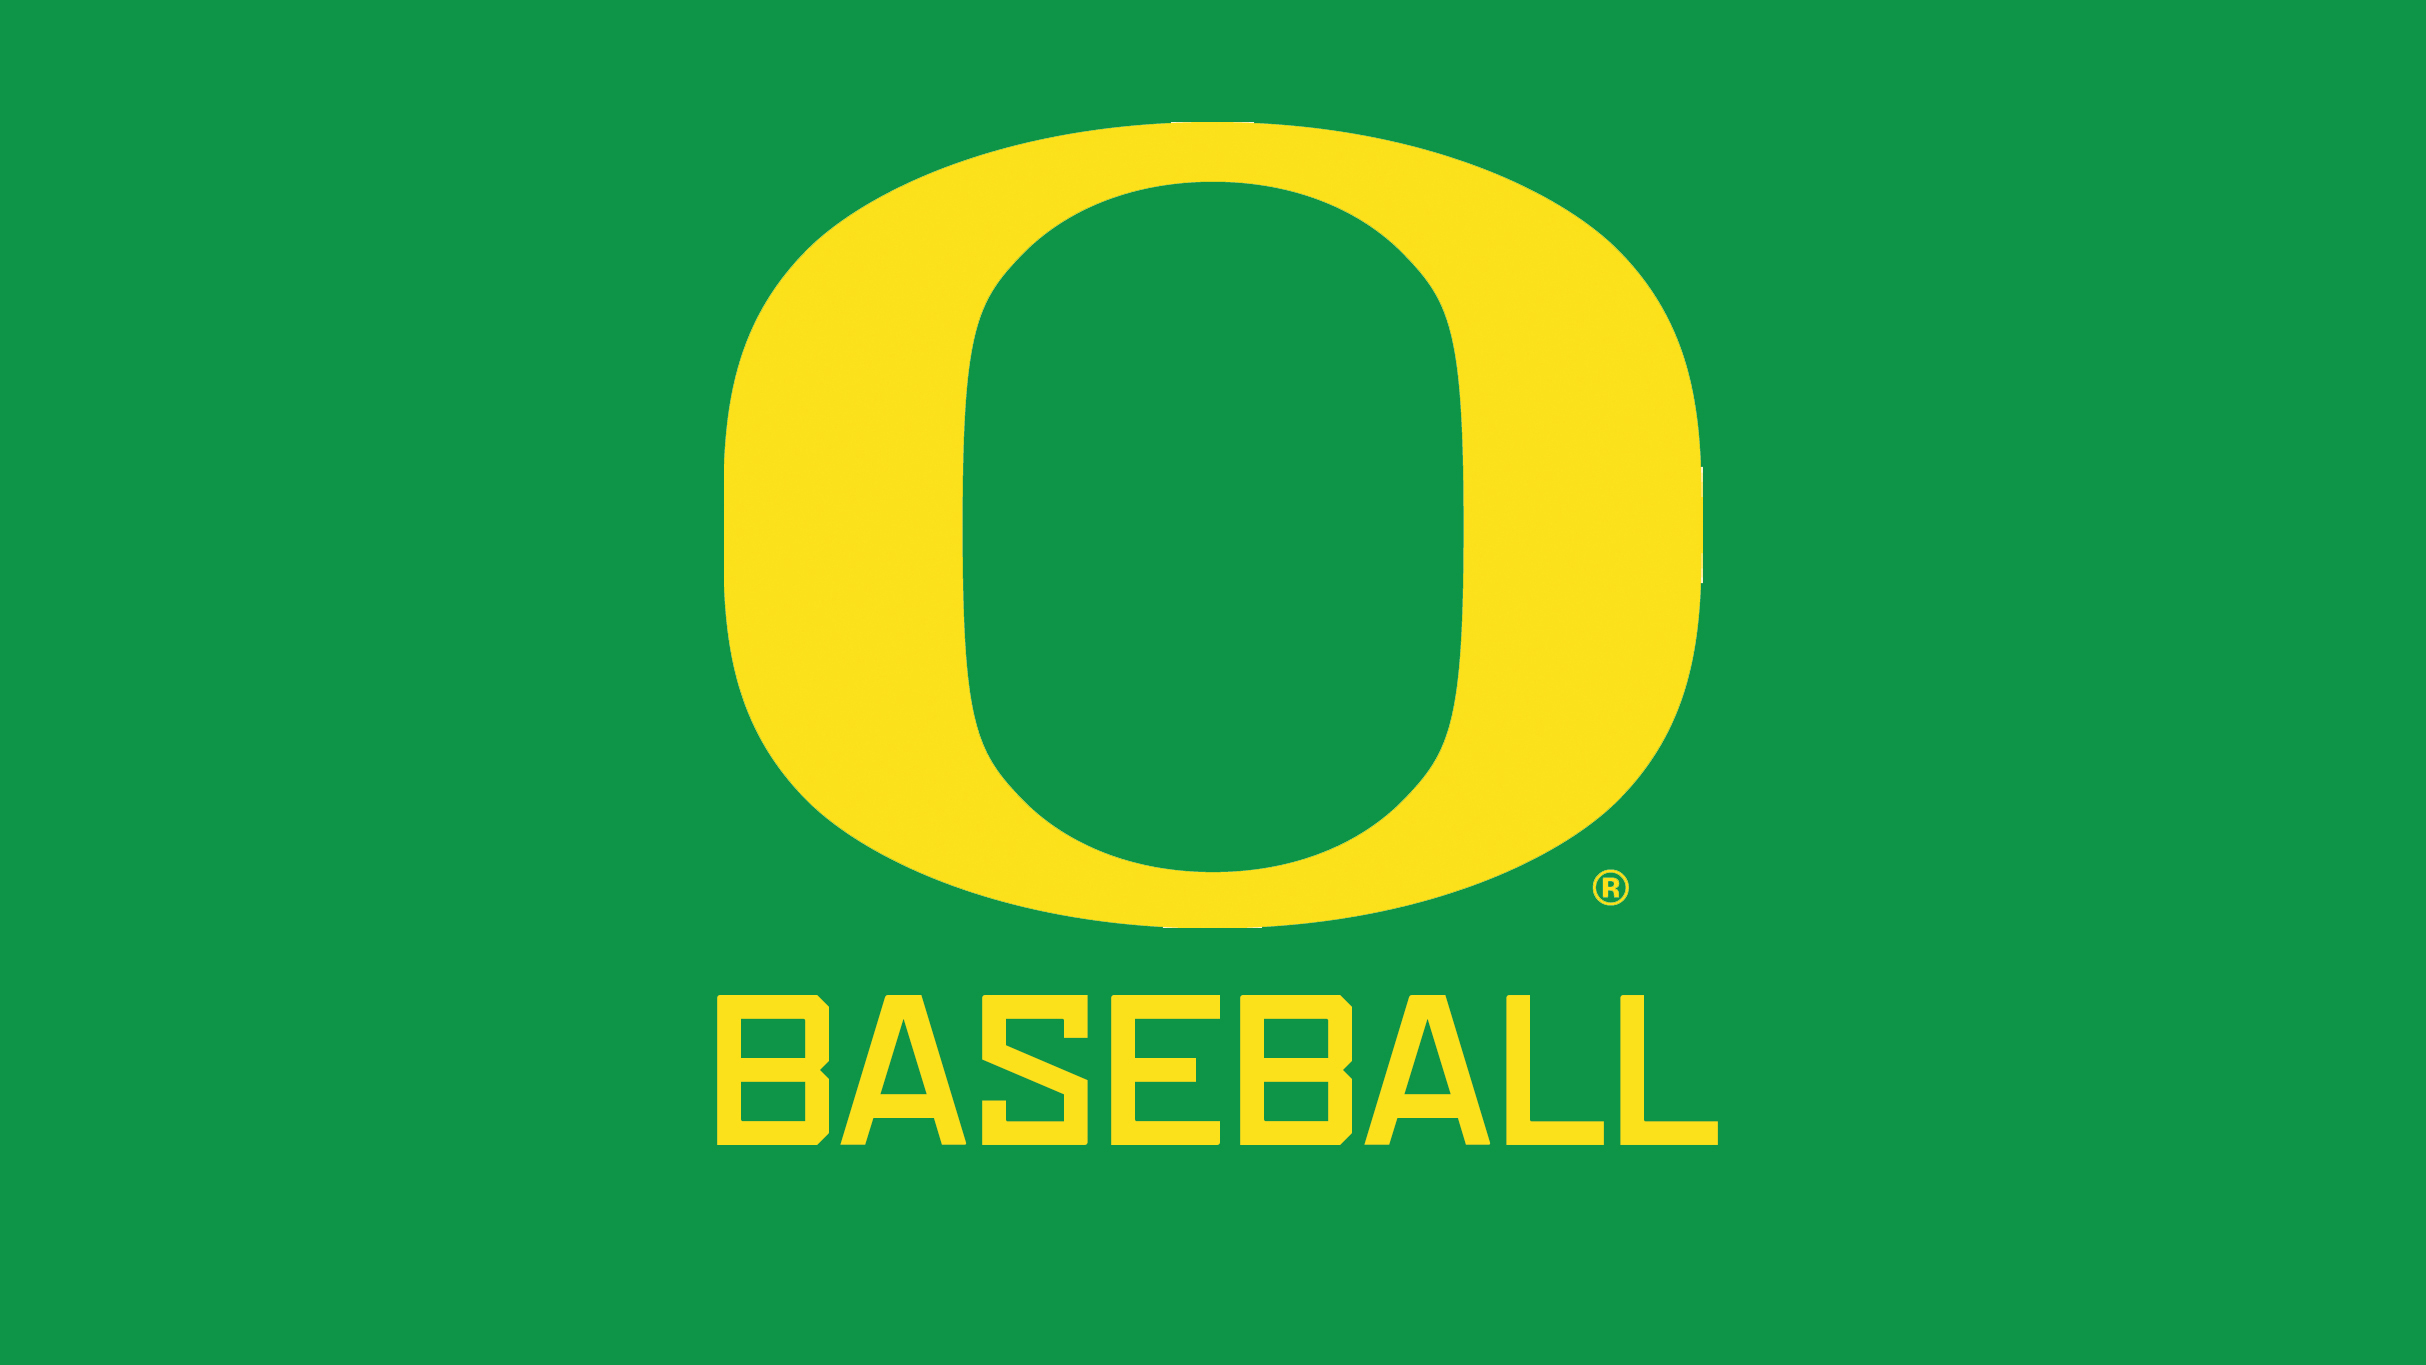 Oregon Ducks Baseball